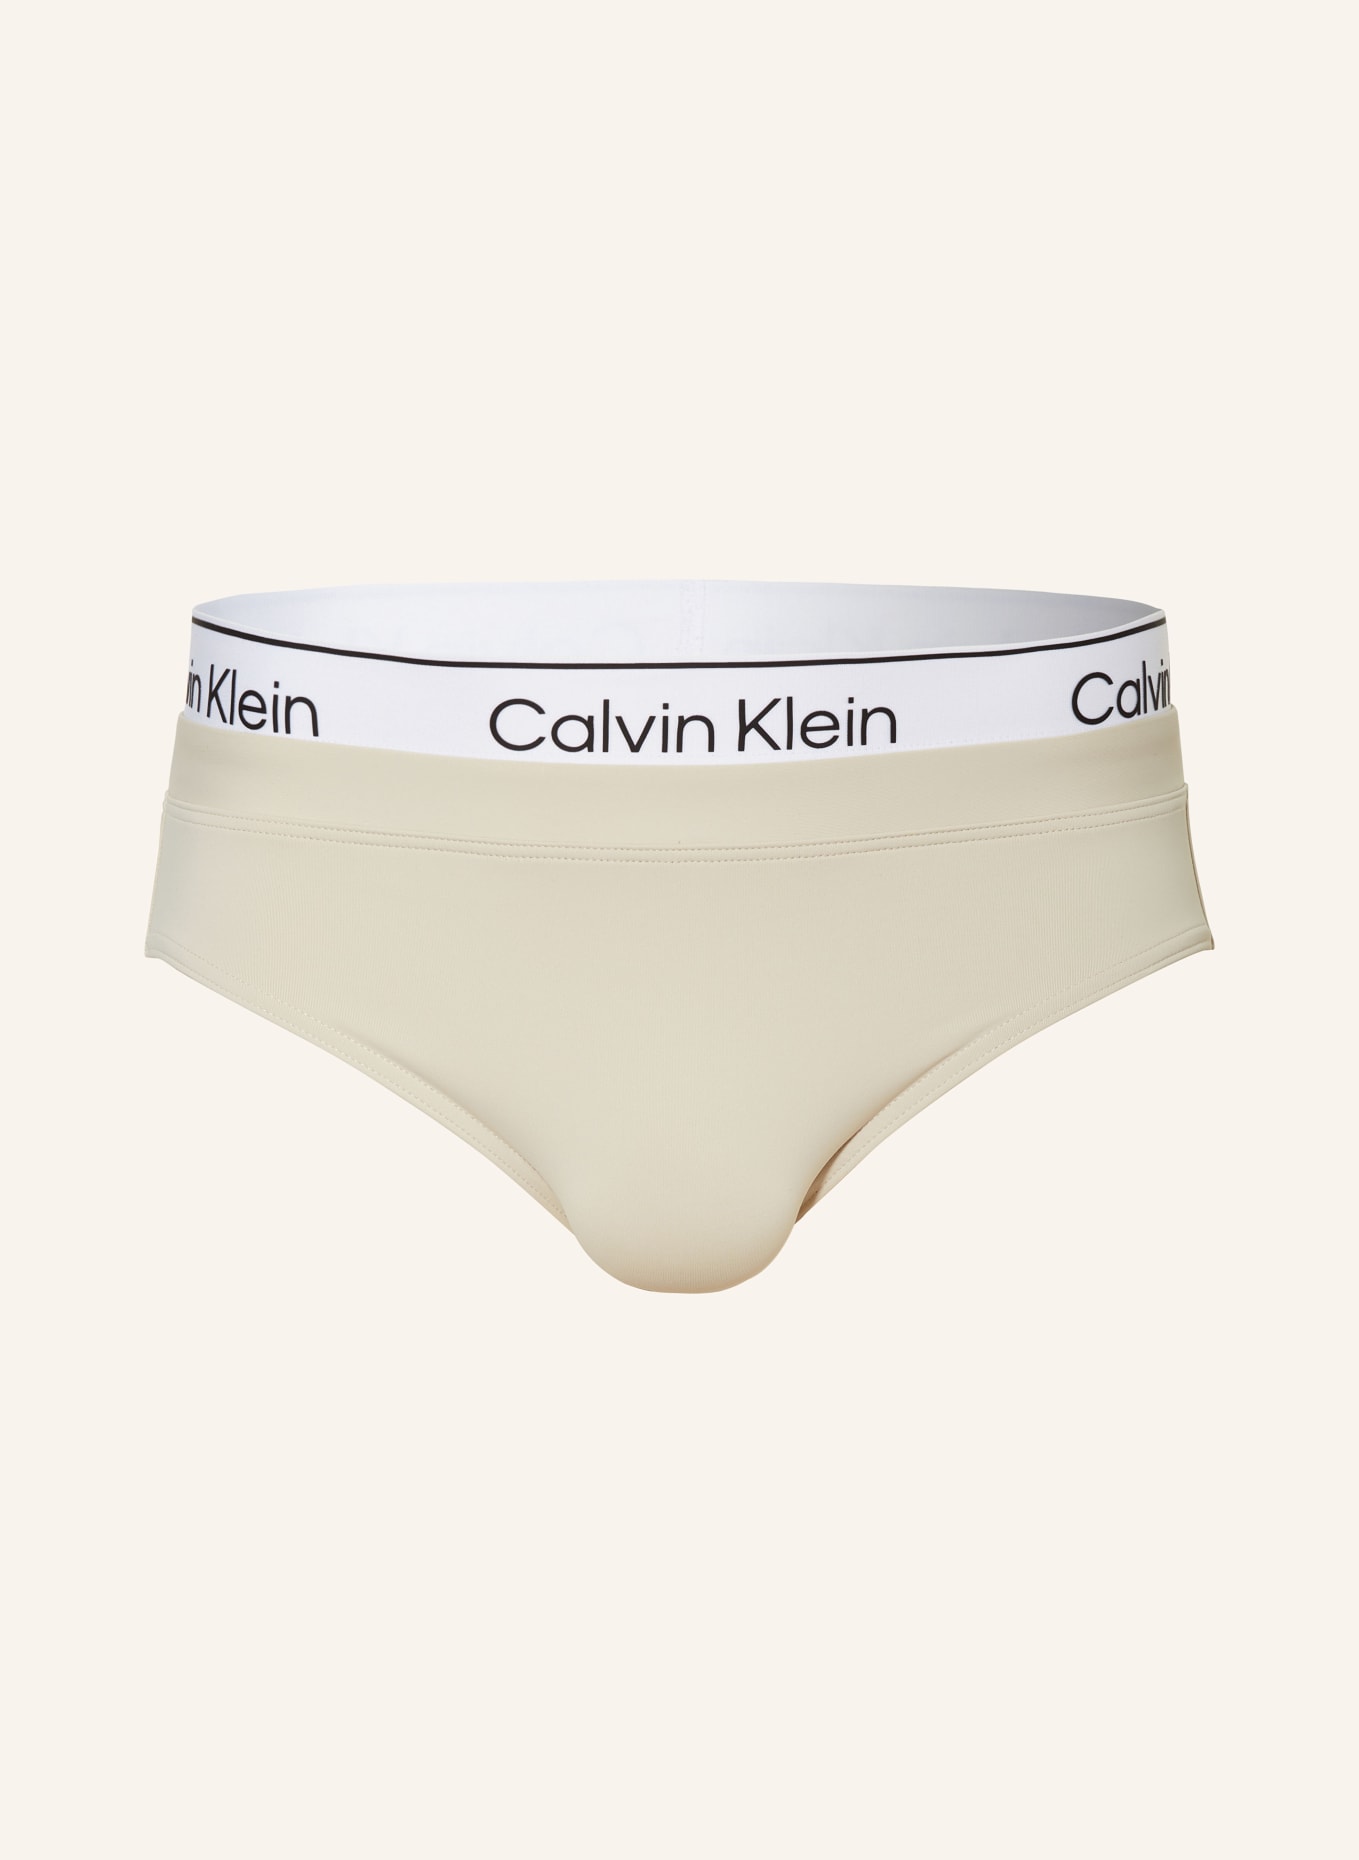 Calvin Klein Swim brief CK META LECACY, Color: CREAM (Image 1)